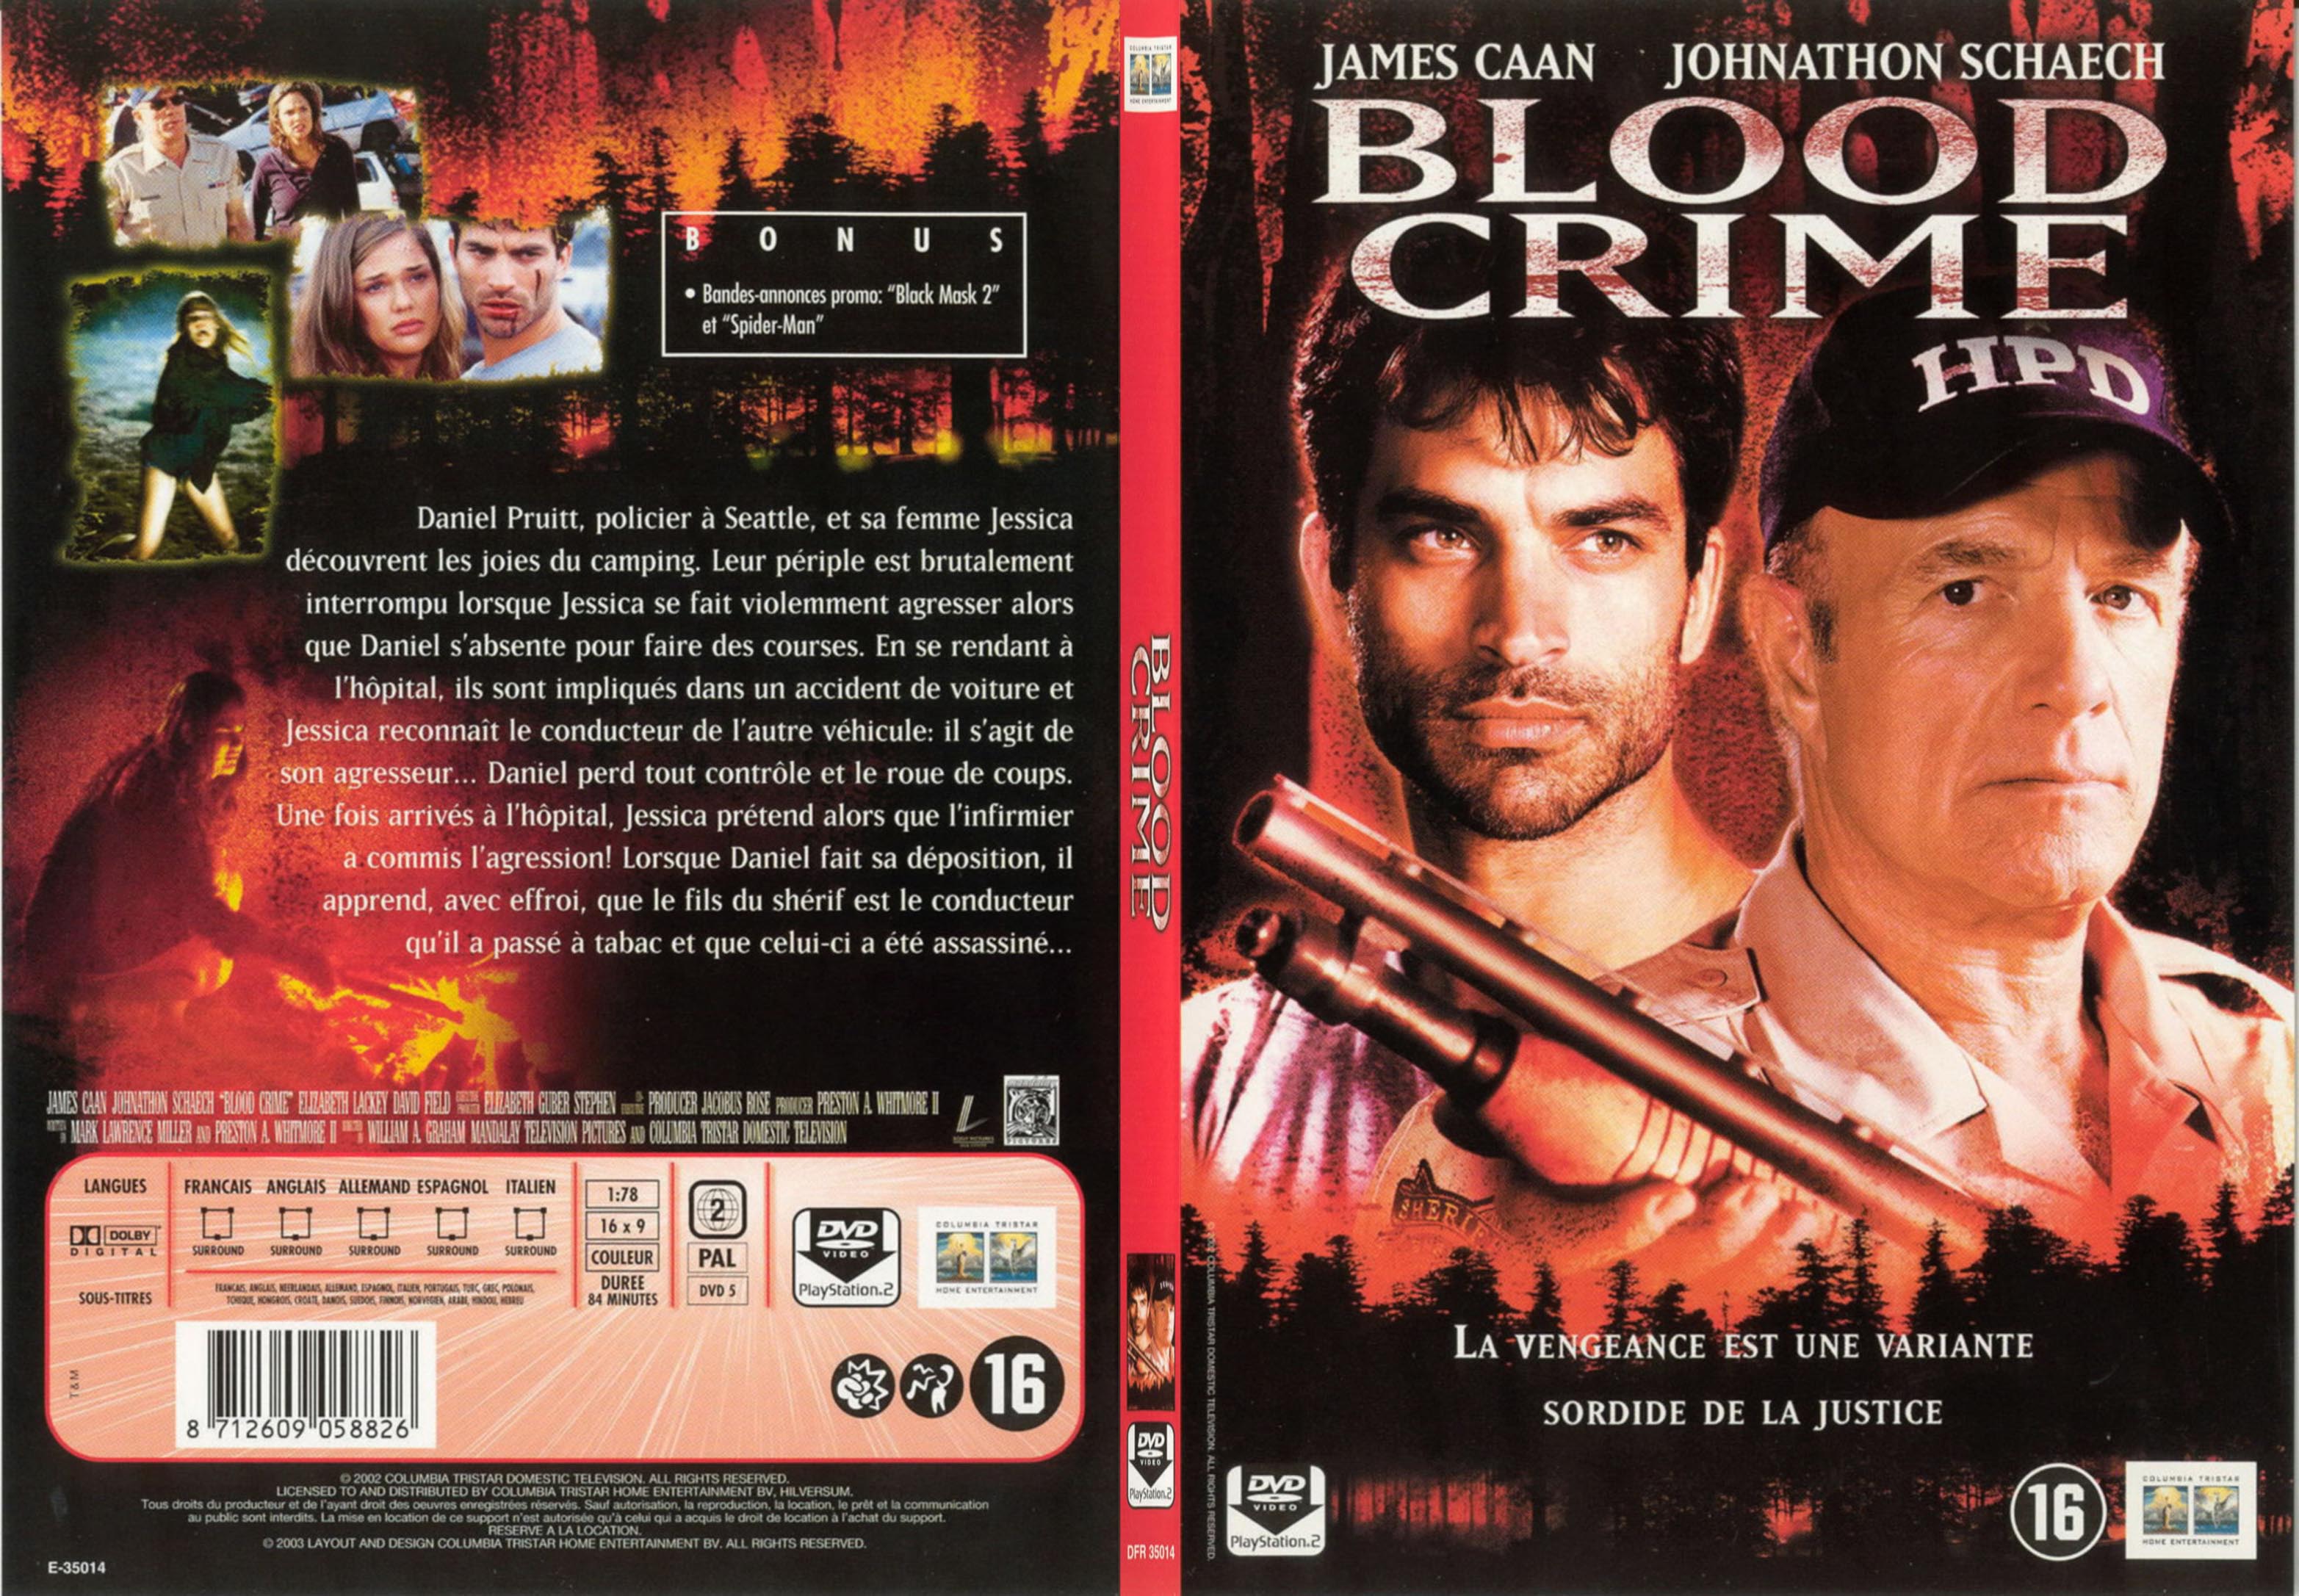 Jaquette DVD Blood crime - SLIM